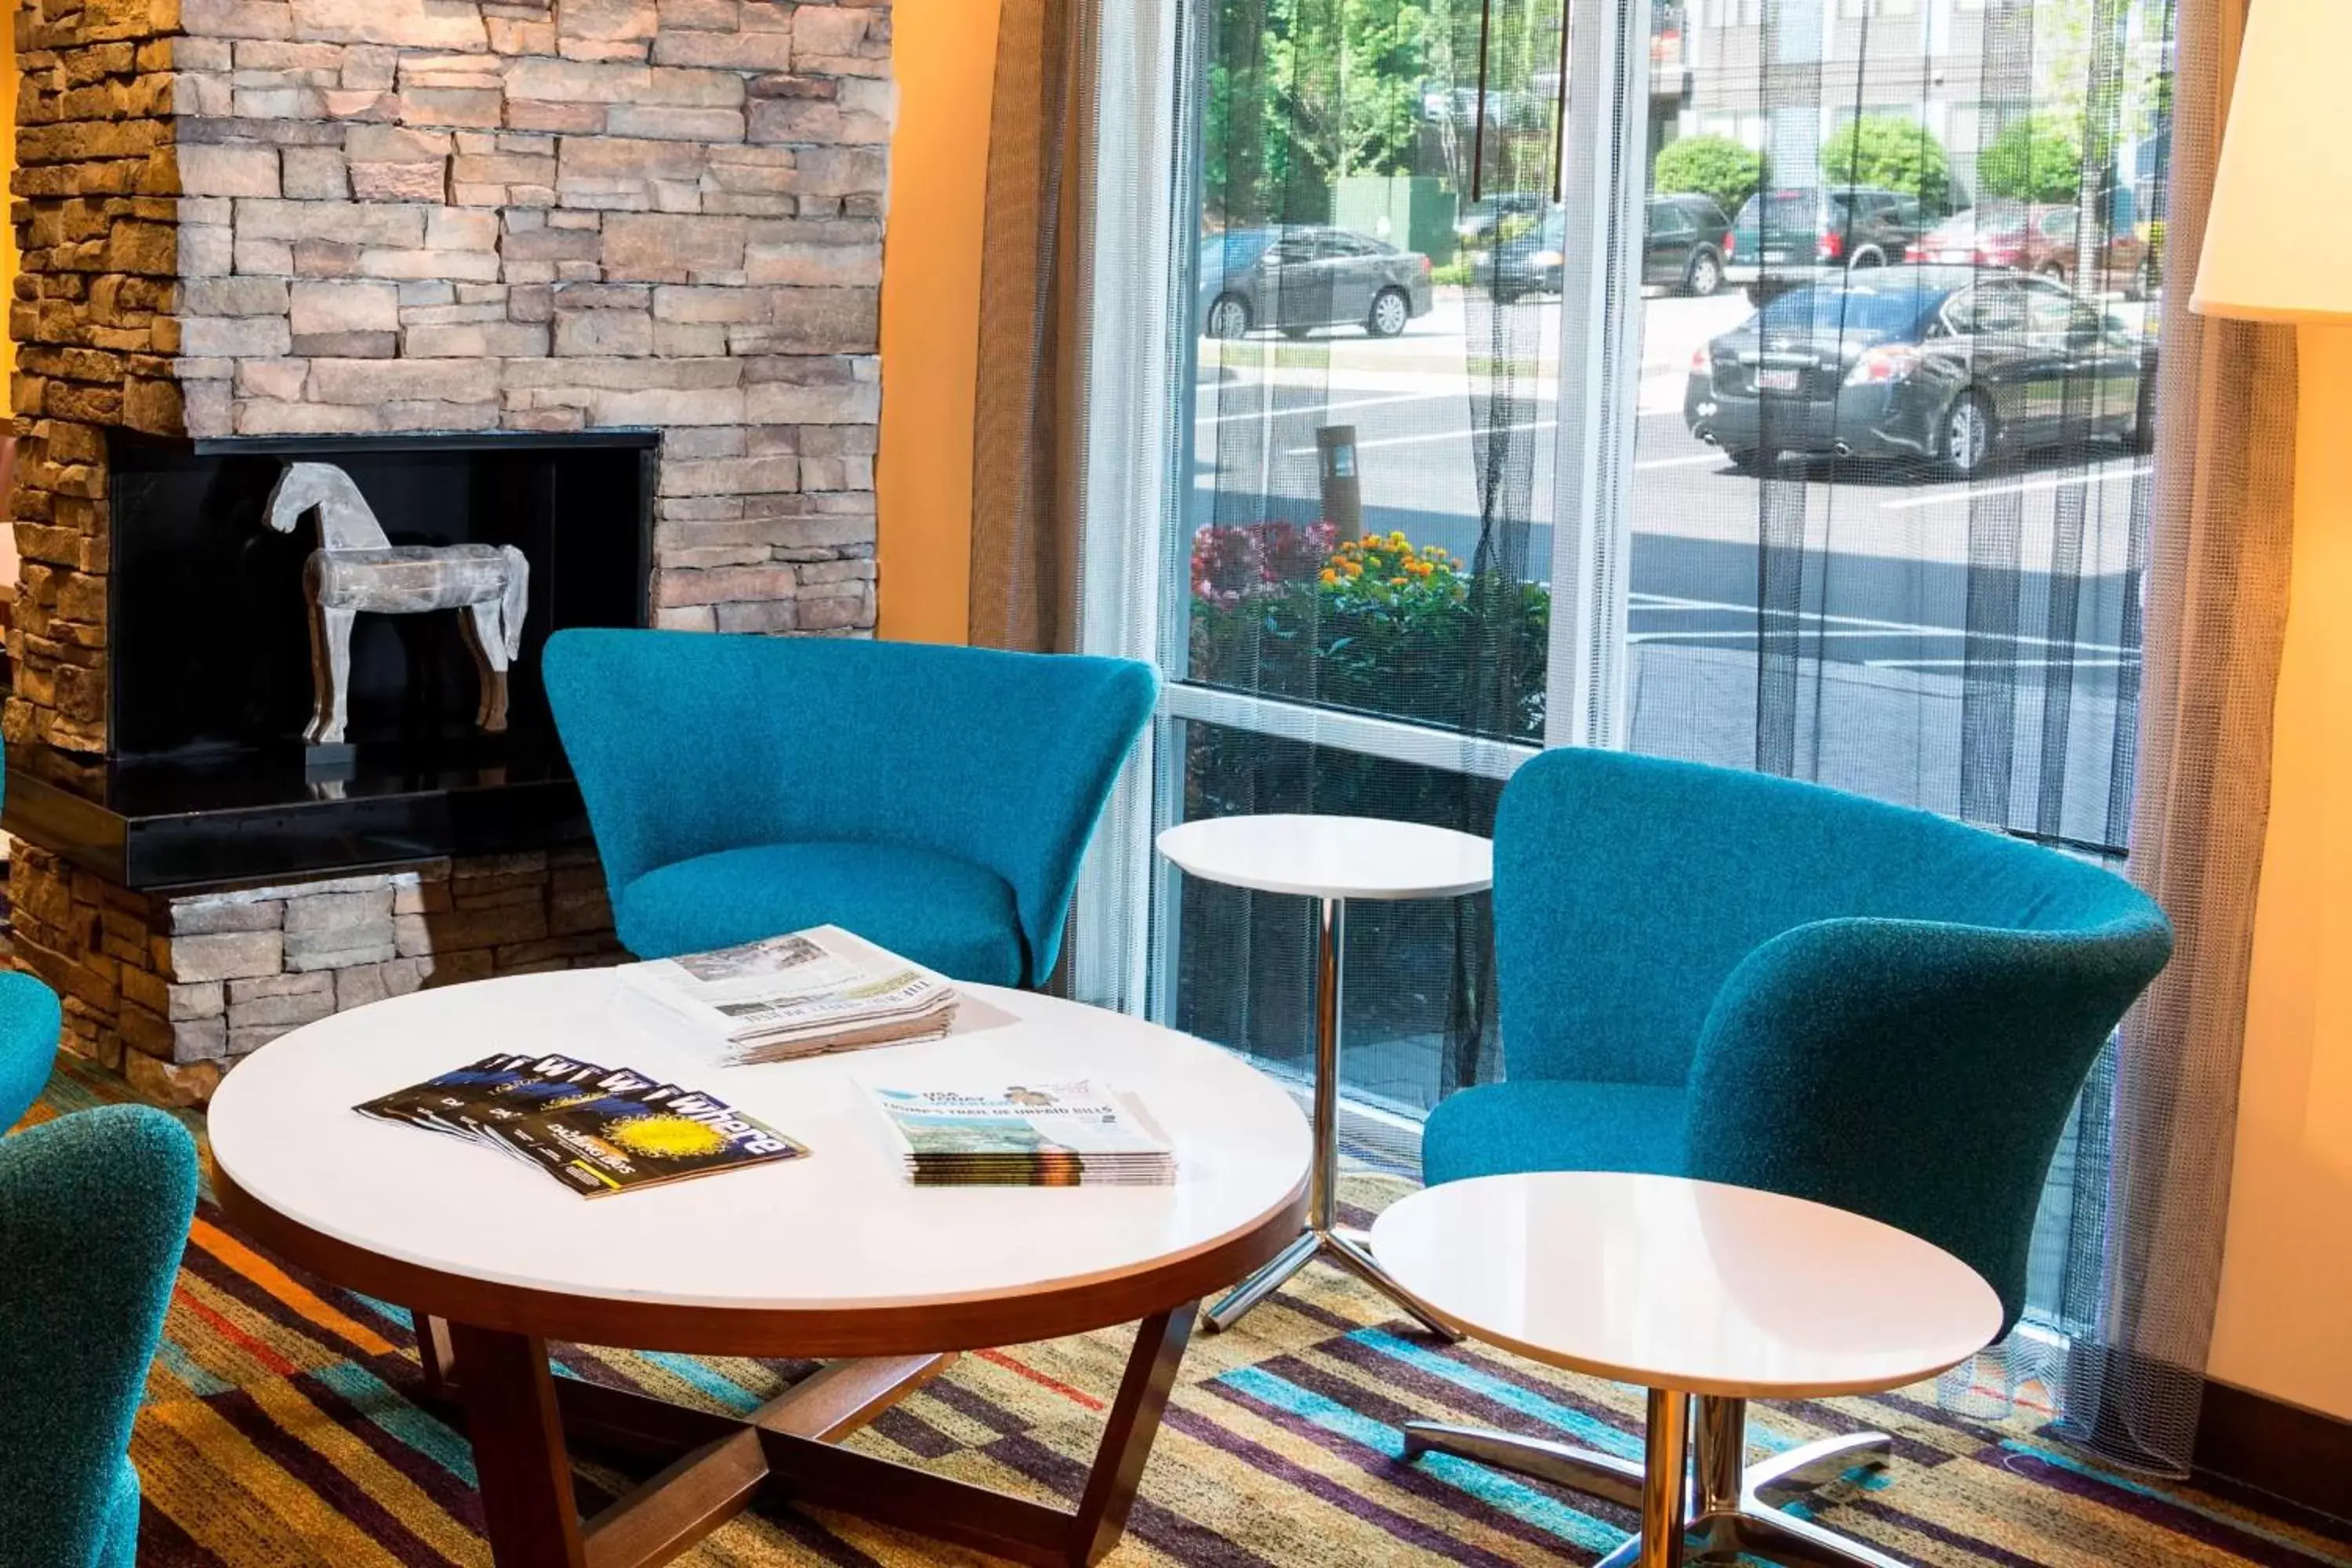 Lobby or reception in Fairfield Inn & Suites by Marriott Atlanta Alpharetta